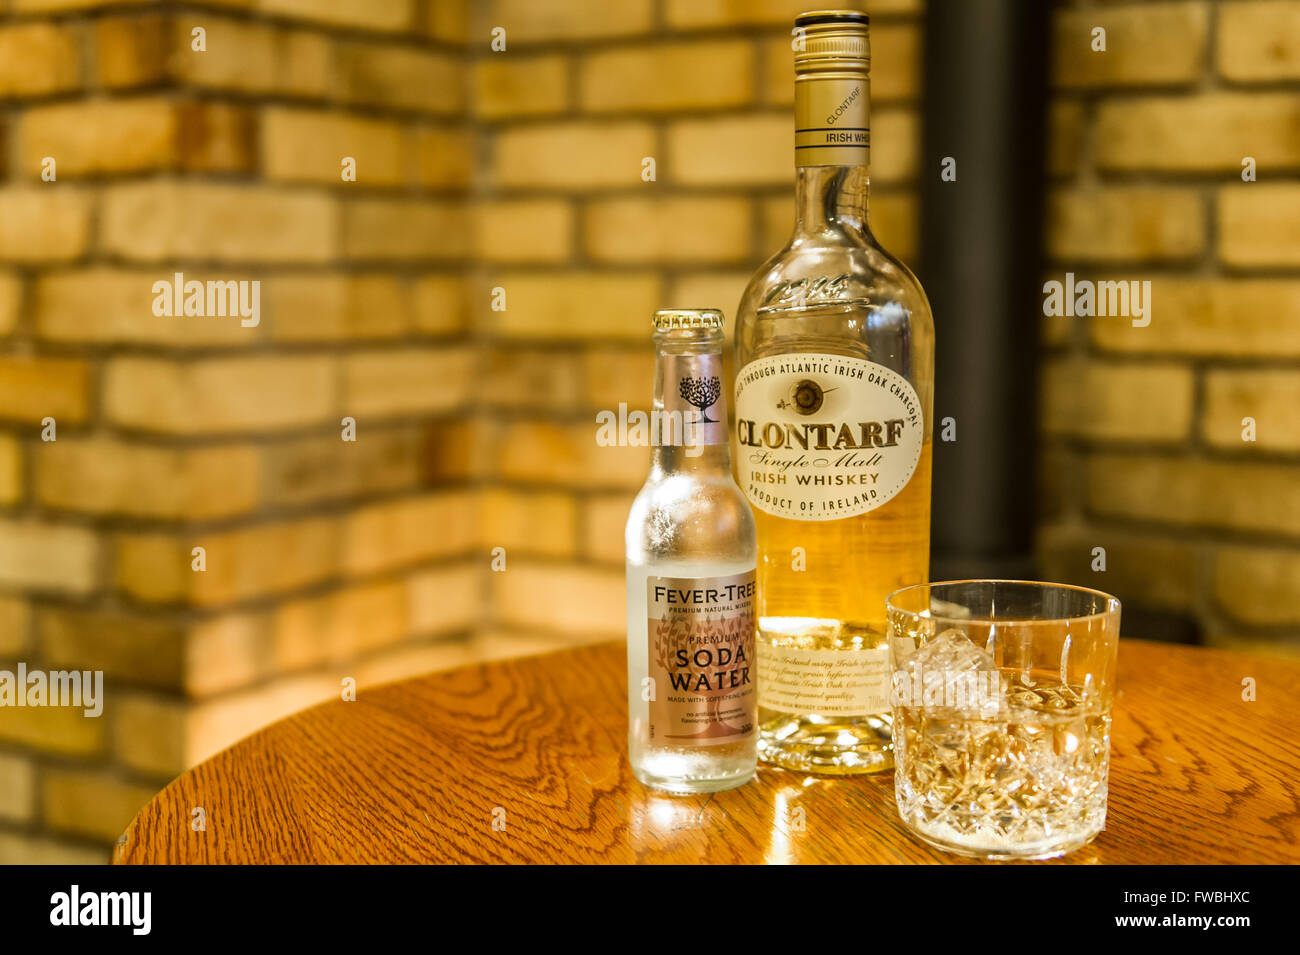 Una bottiglia di Clontarf Single Malt Whiskey irlandese con un imbottigliatore di Fever-Tree Soda Water e un bicchiere di whiskey con cubetti di ghiaccio. Foto Stock